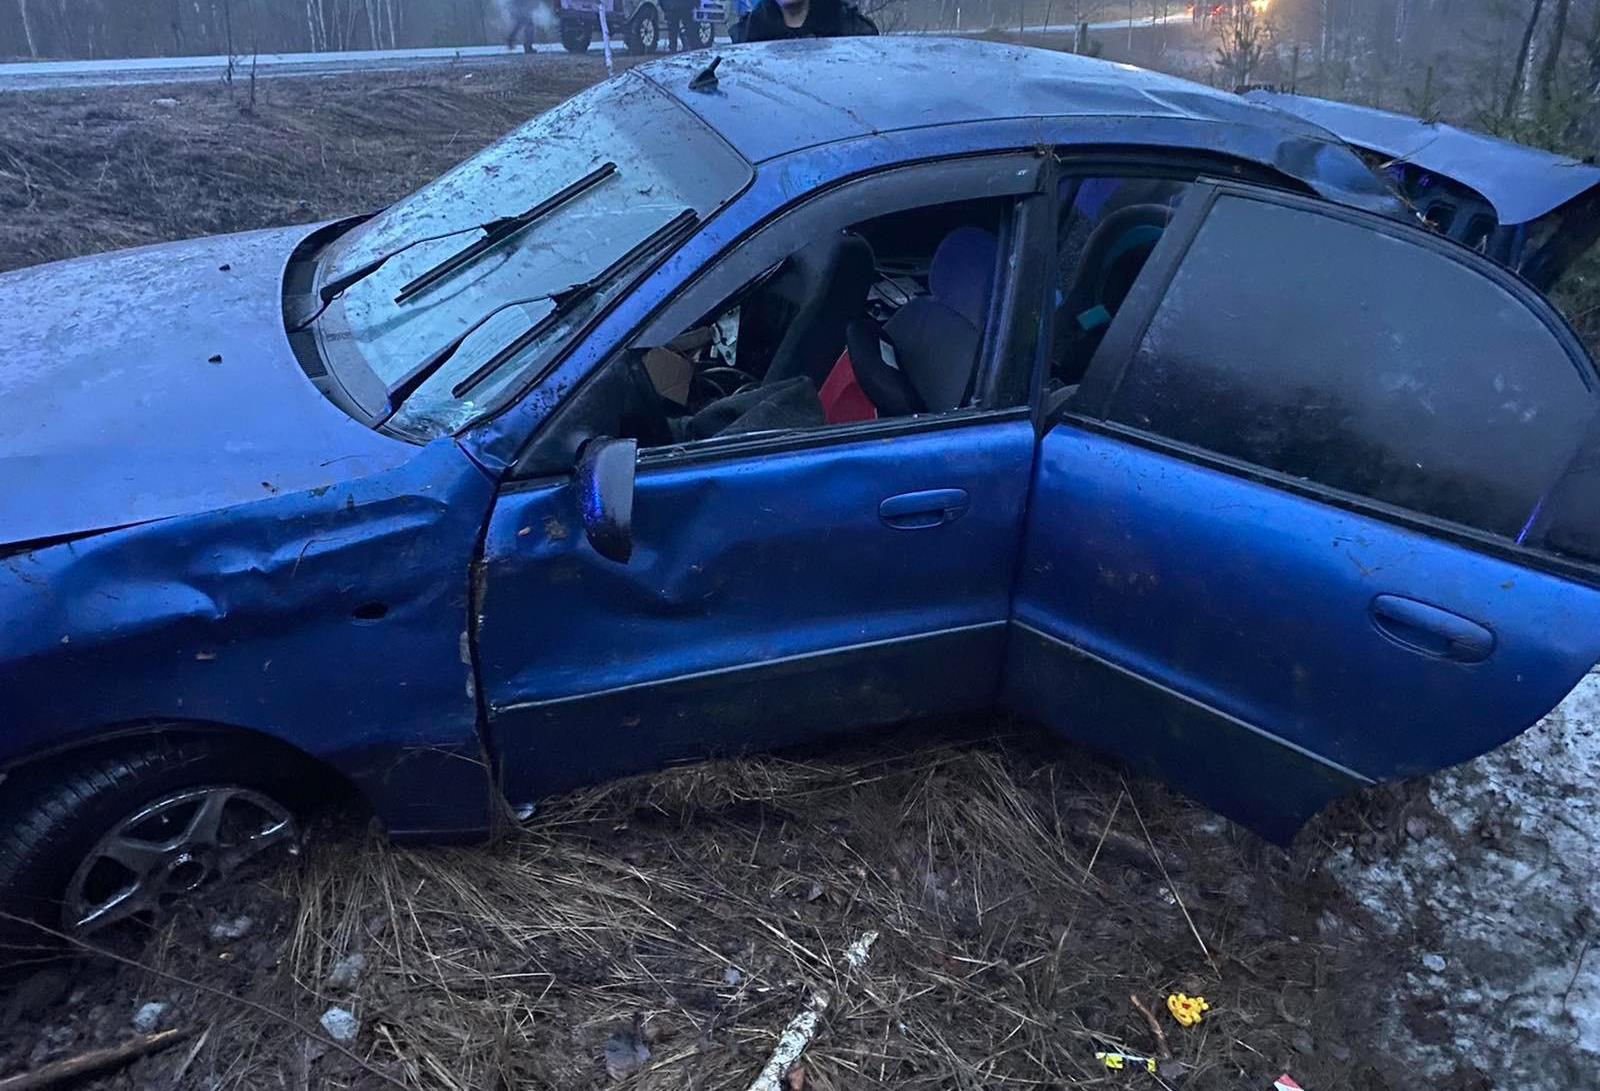 

Перевозивший трех детей пьяный водитель легковушки устроил ДТП под Воткинском

